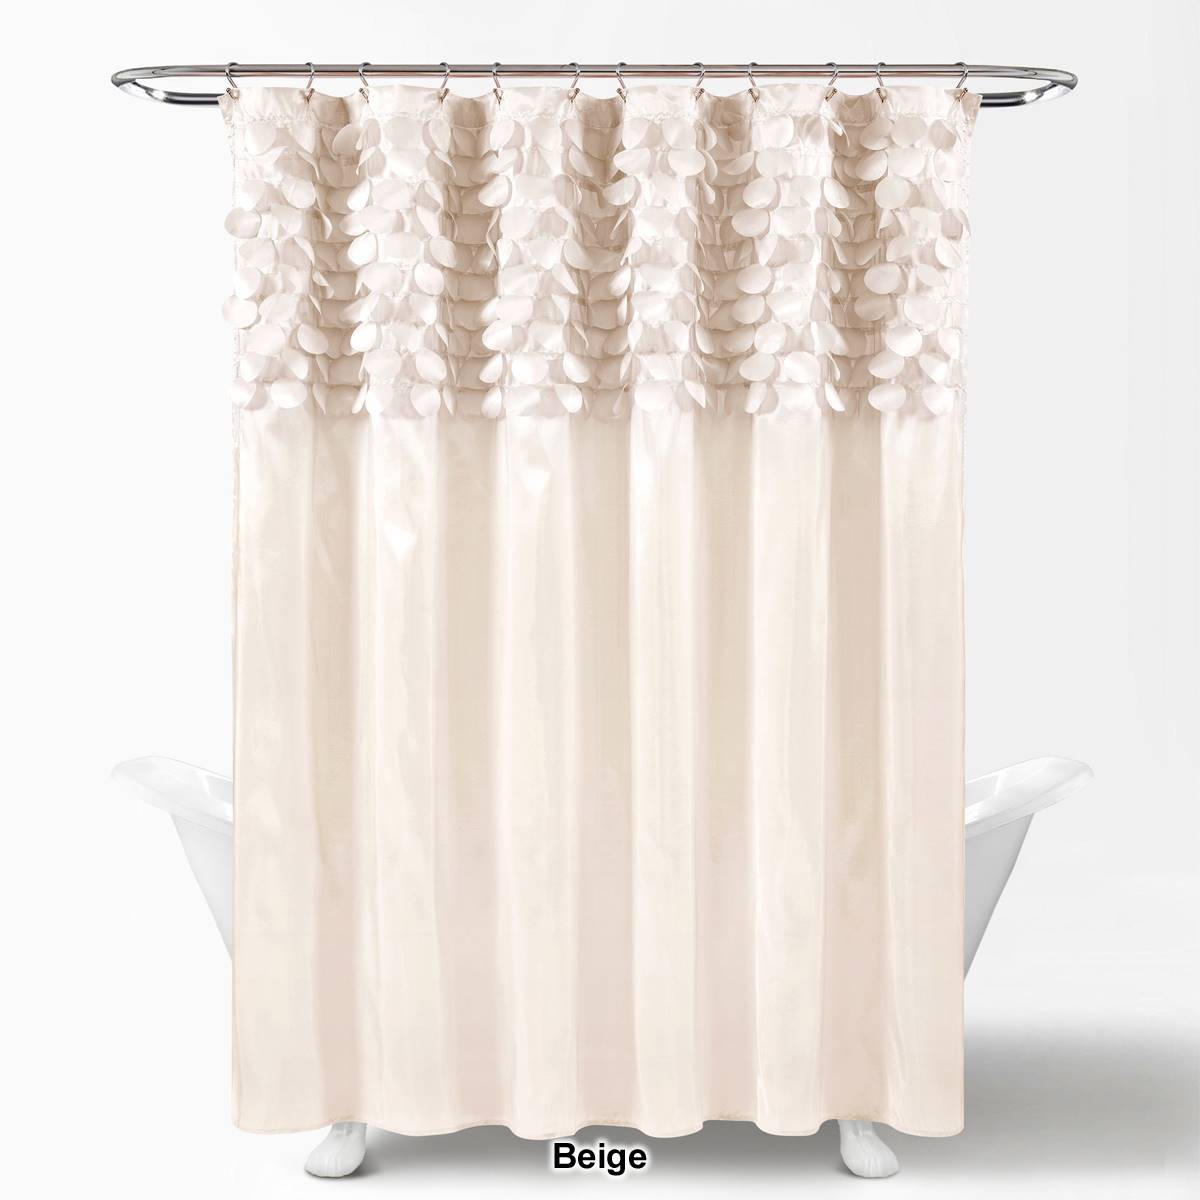 Lush Decor(R) Lillian Shower Curtain